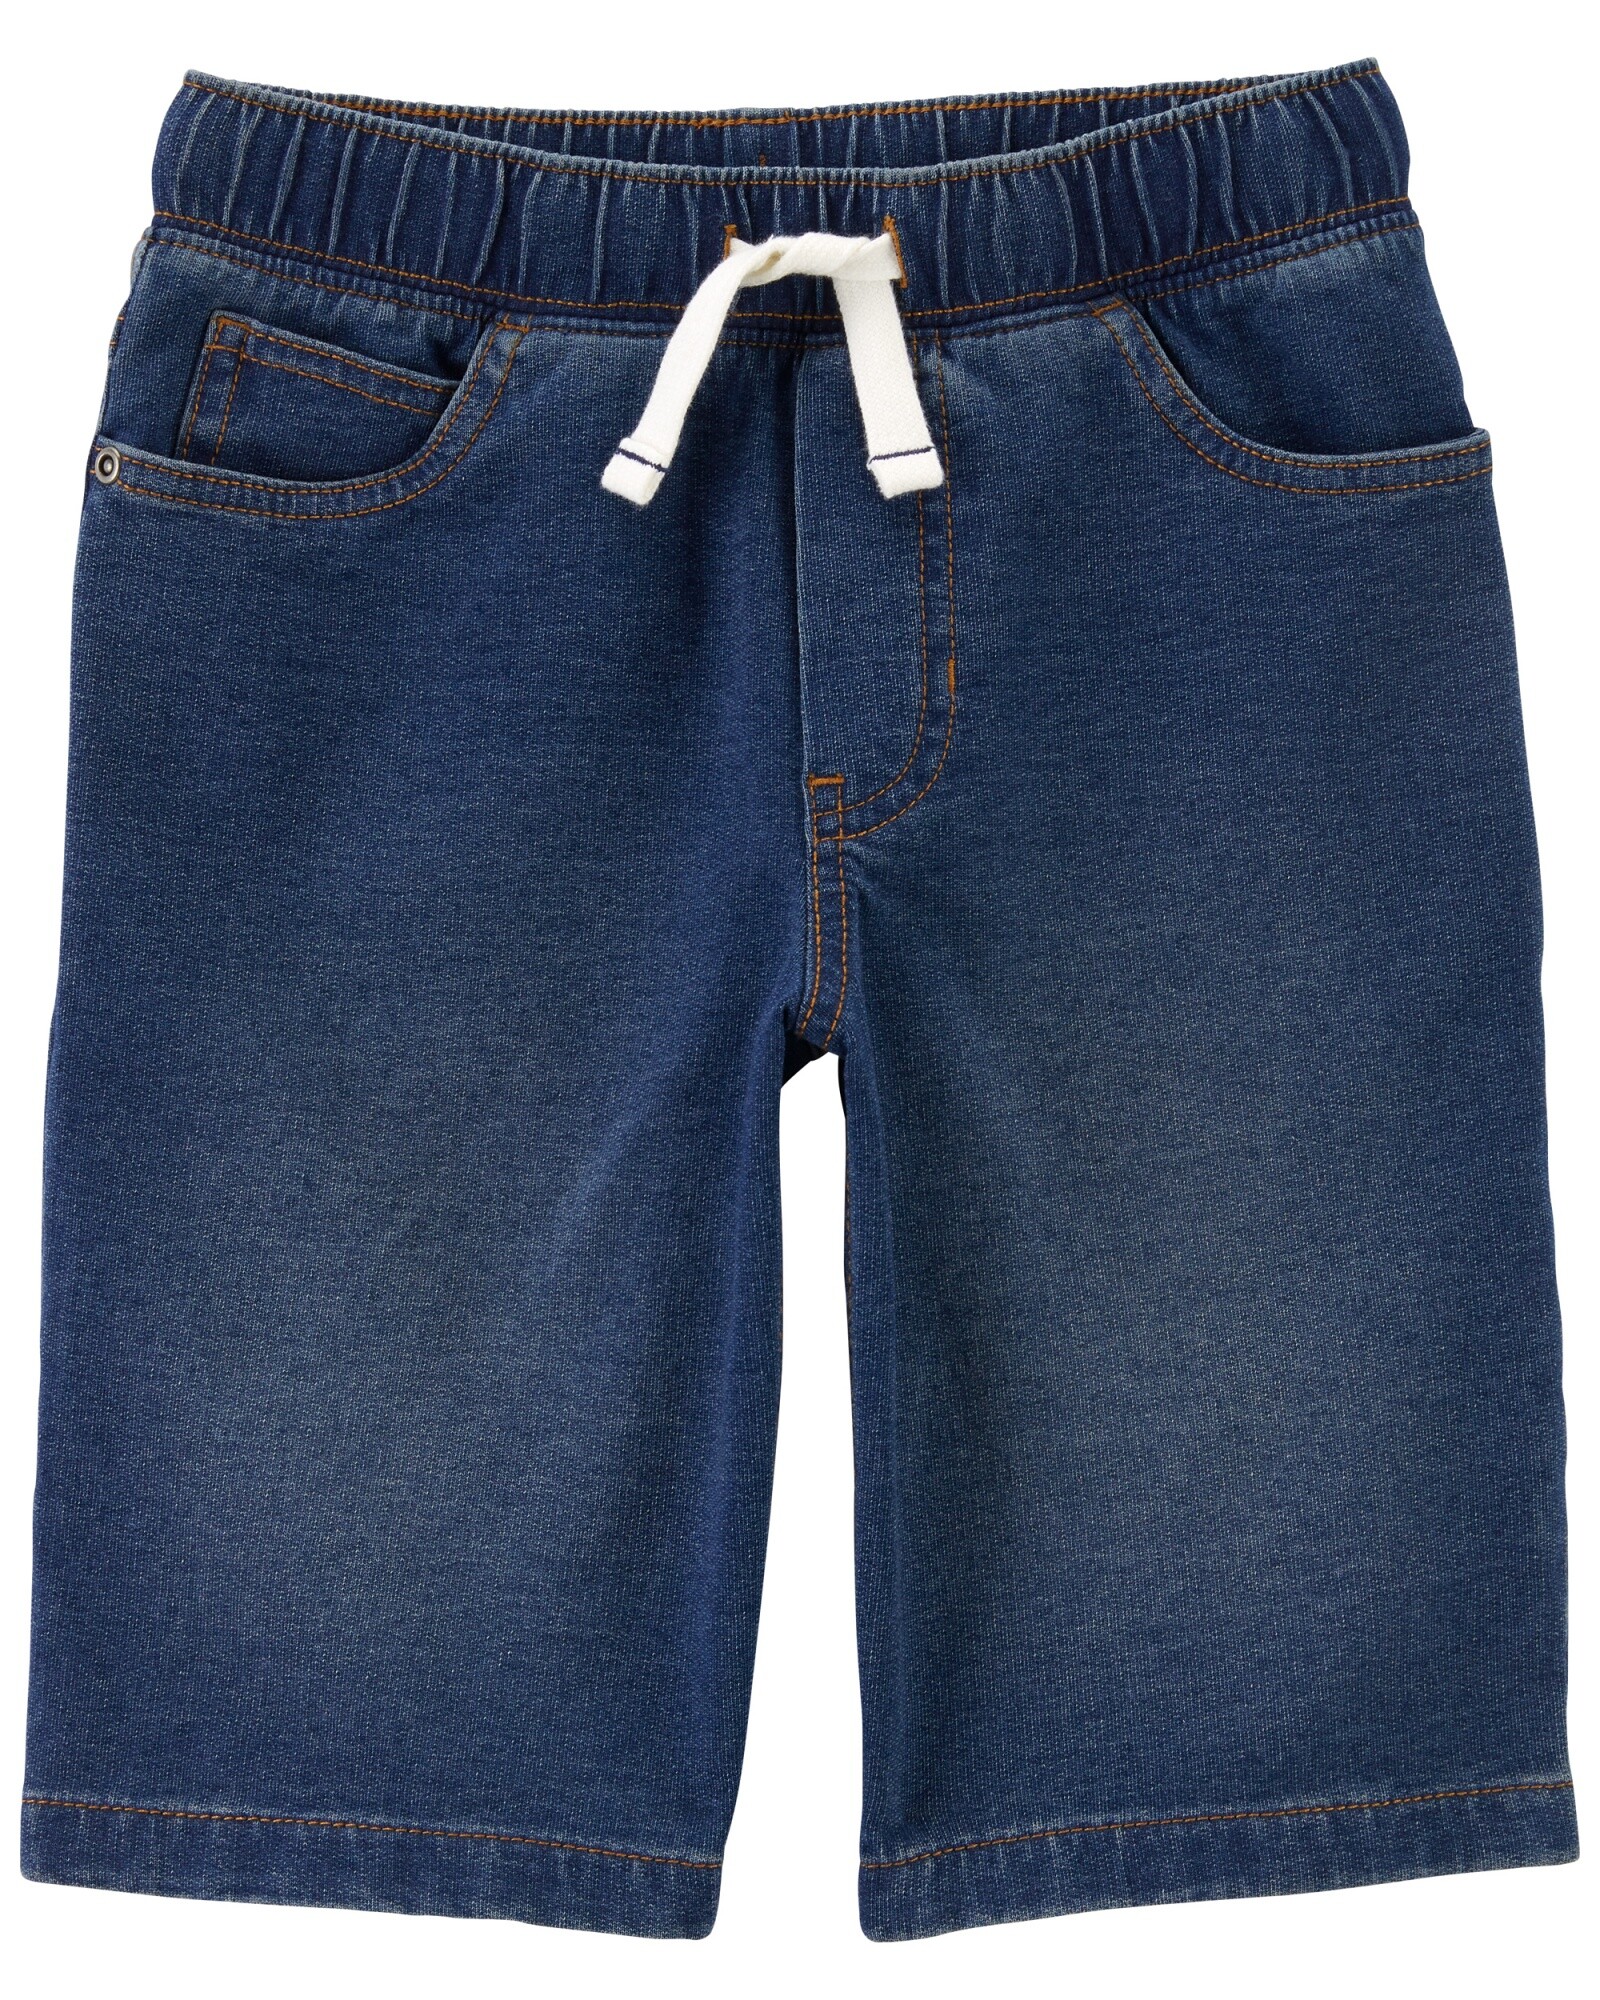 Bermuda de jean con cordón. Talles 6-8 Sin color